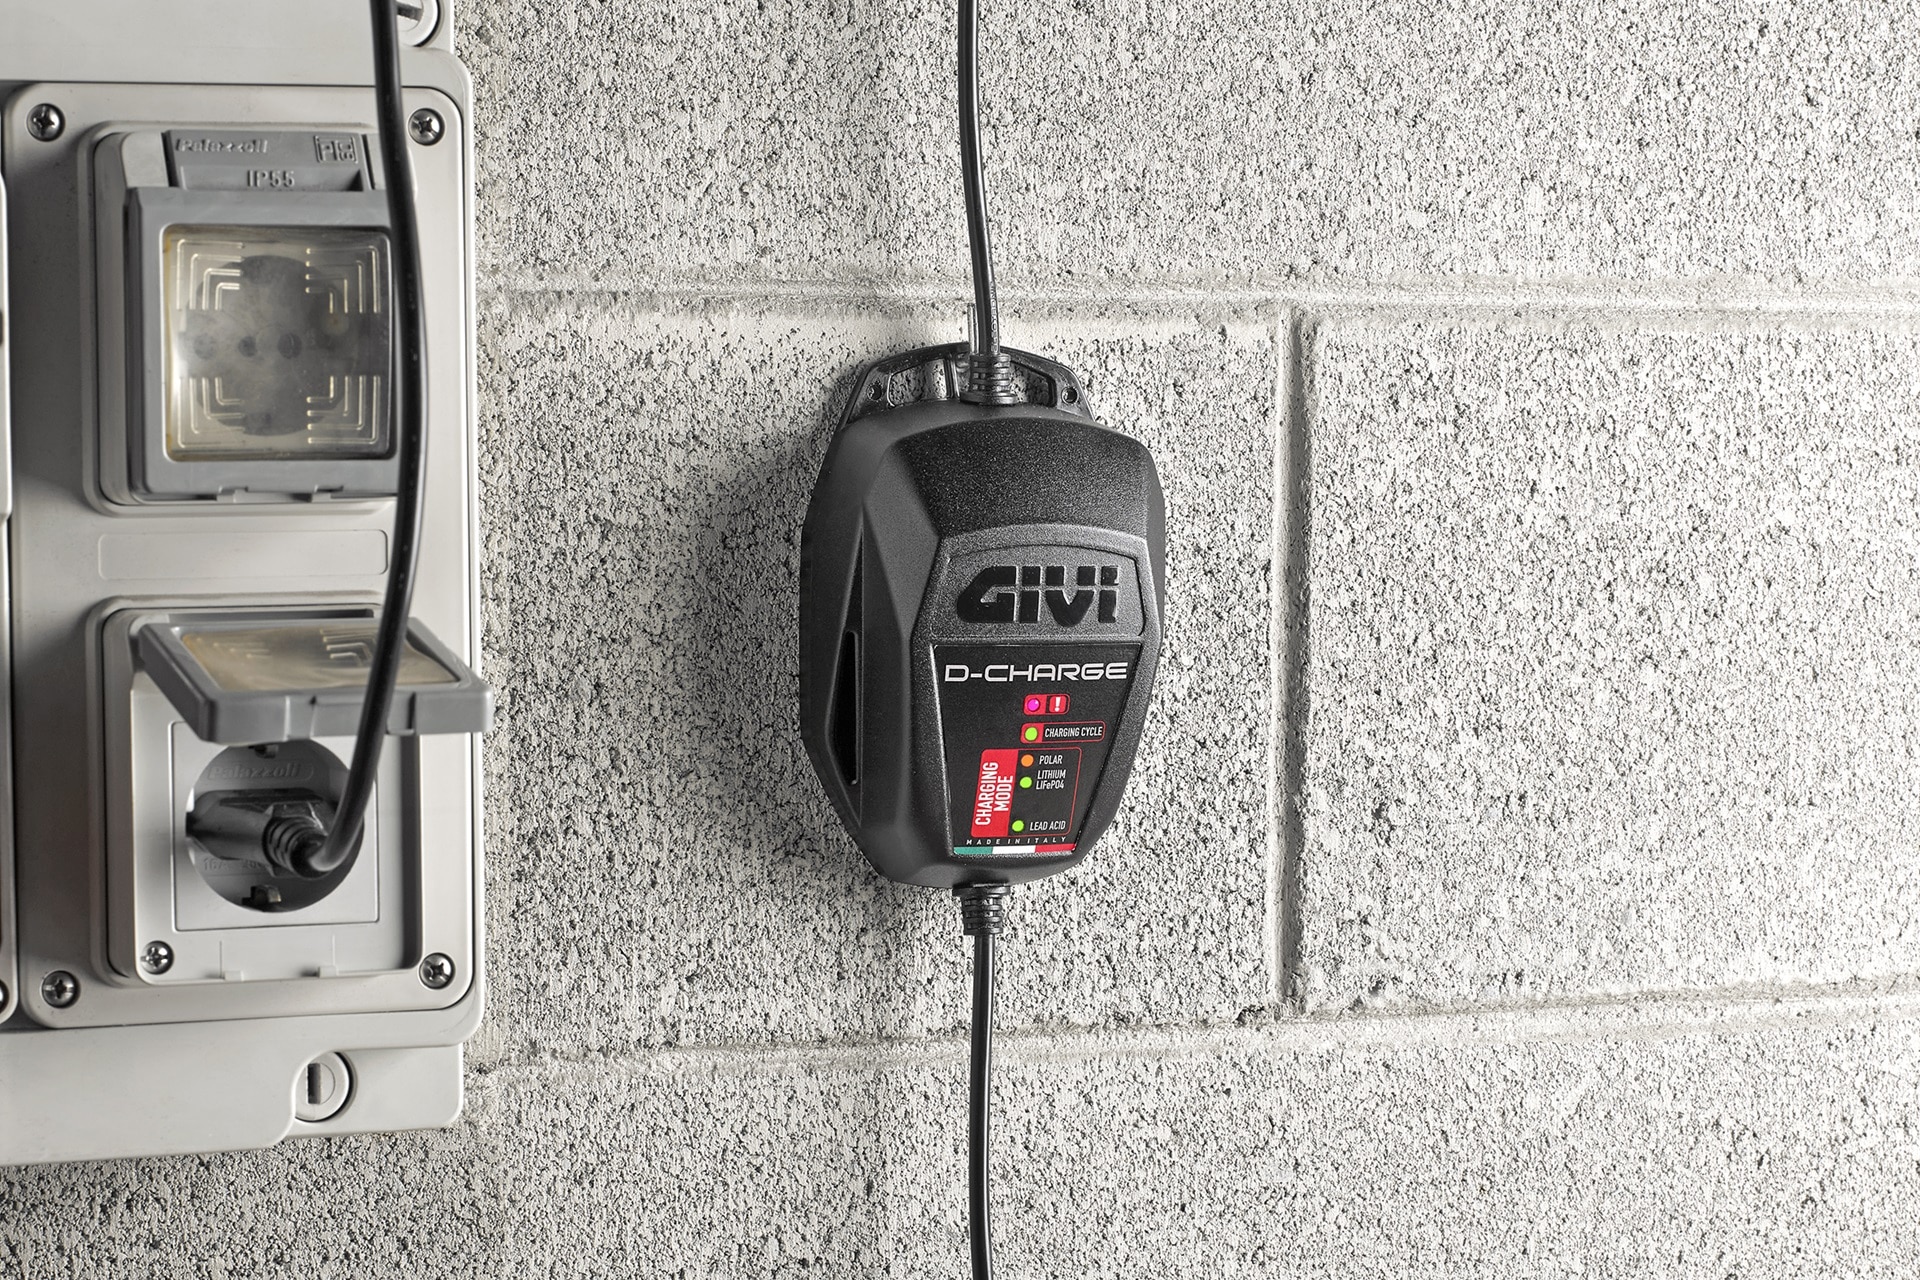 Cargador de batería GIVI S510 D-Charge: Ideal para llevar en nuestro viajes